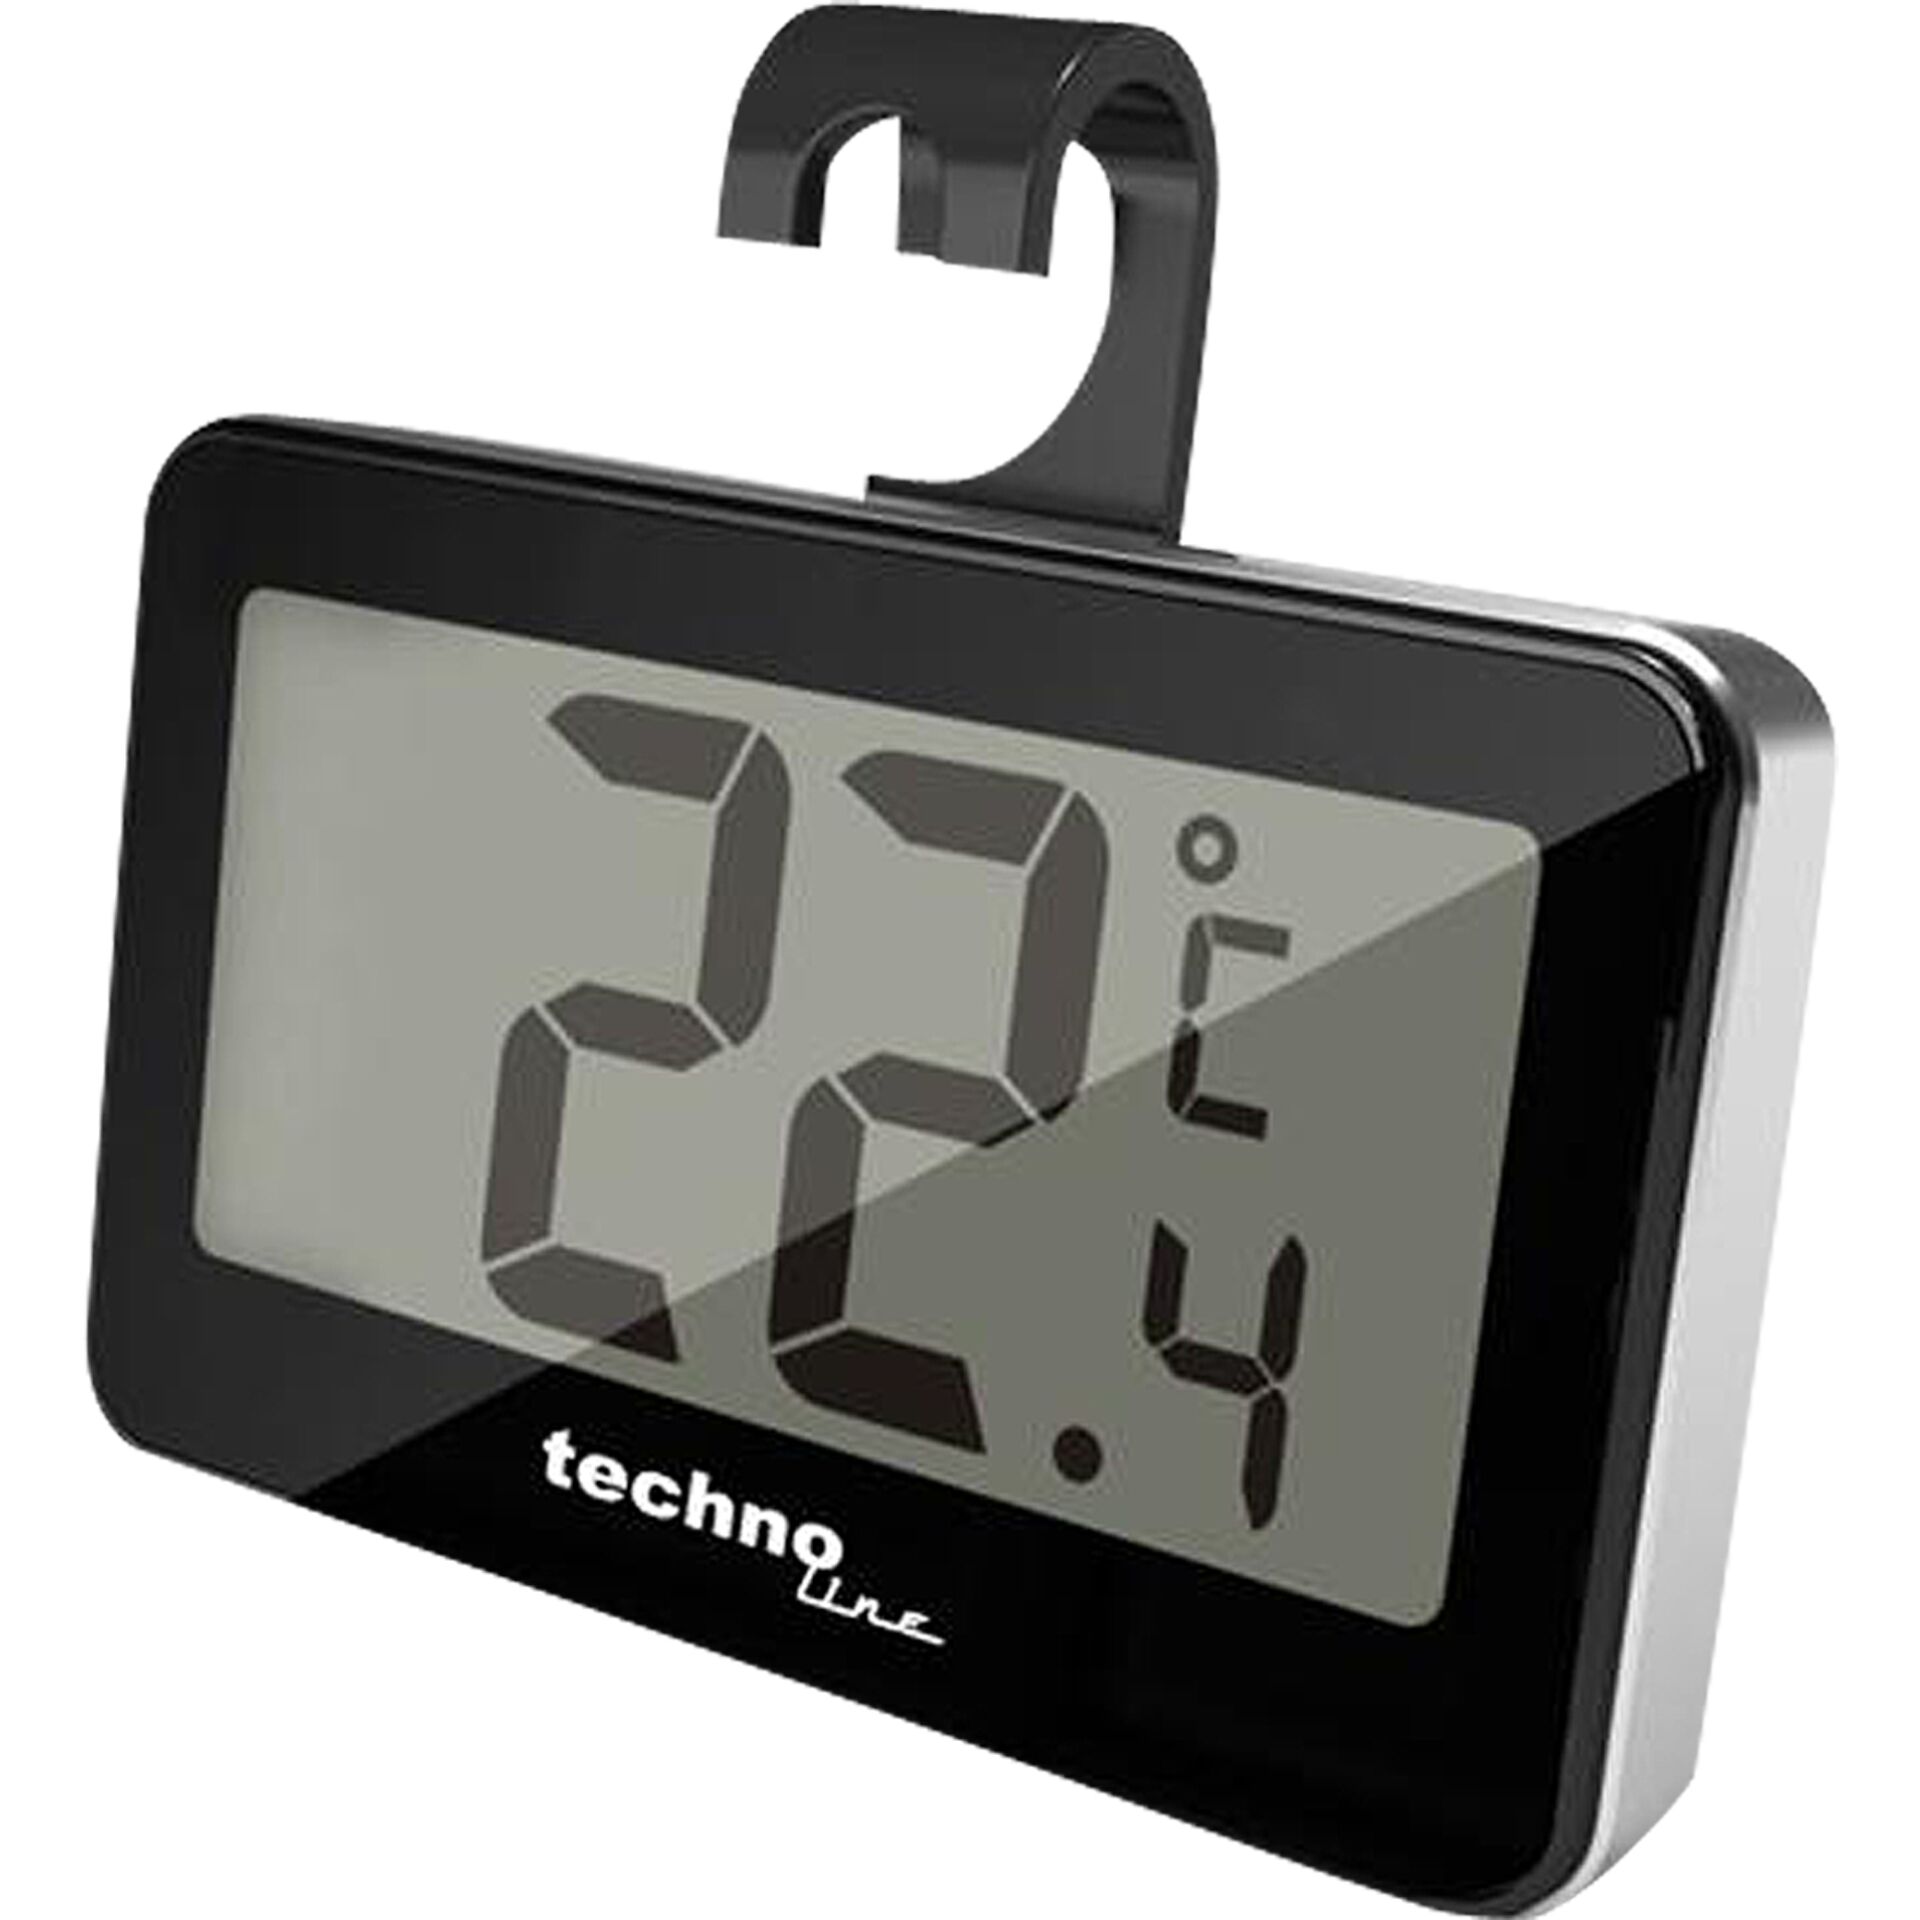 Technoline WS 7012 Küchenarmaturen-Zubehör Elektronisches Umgebungsthermometer Schwarz